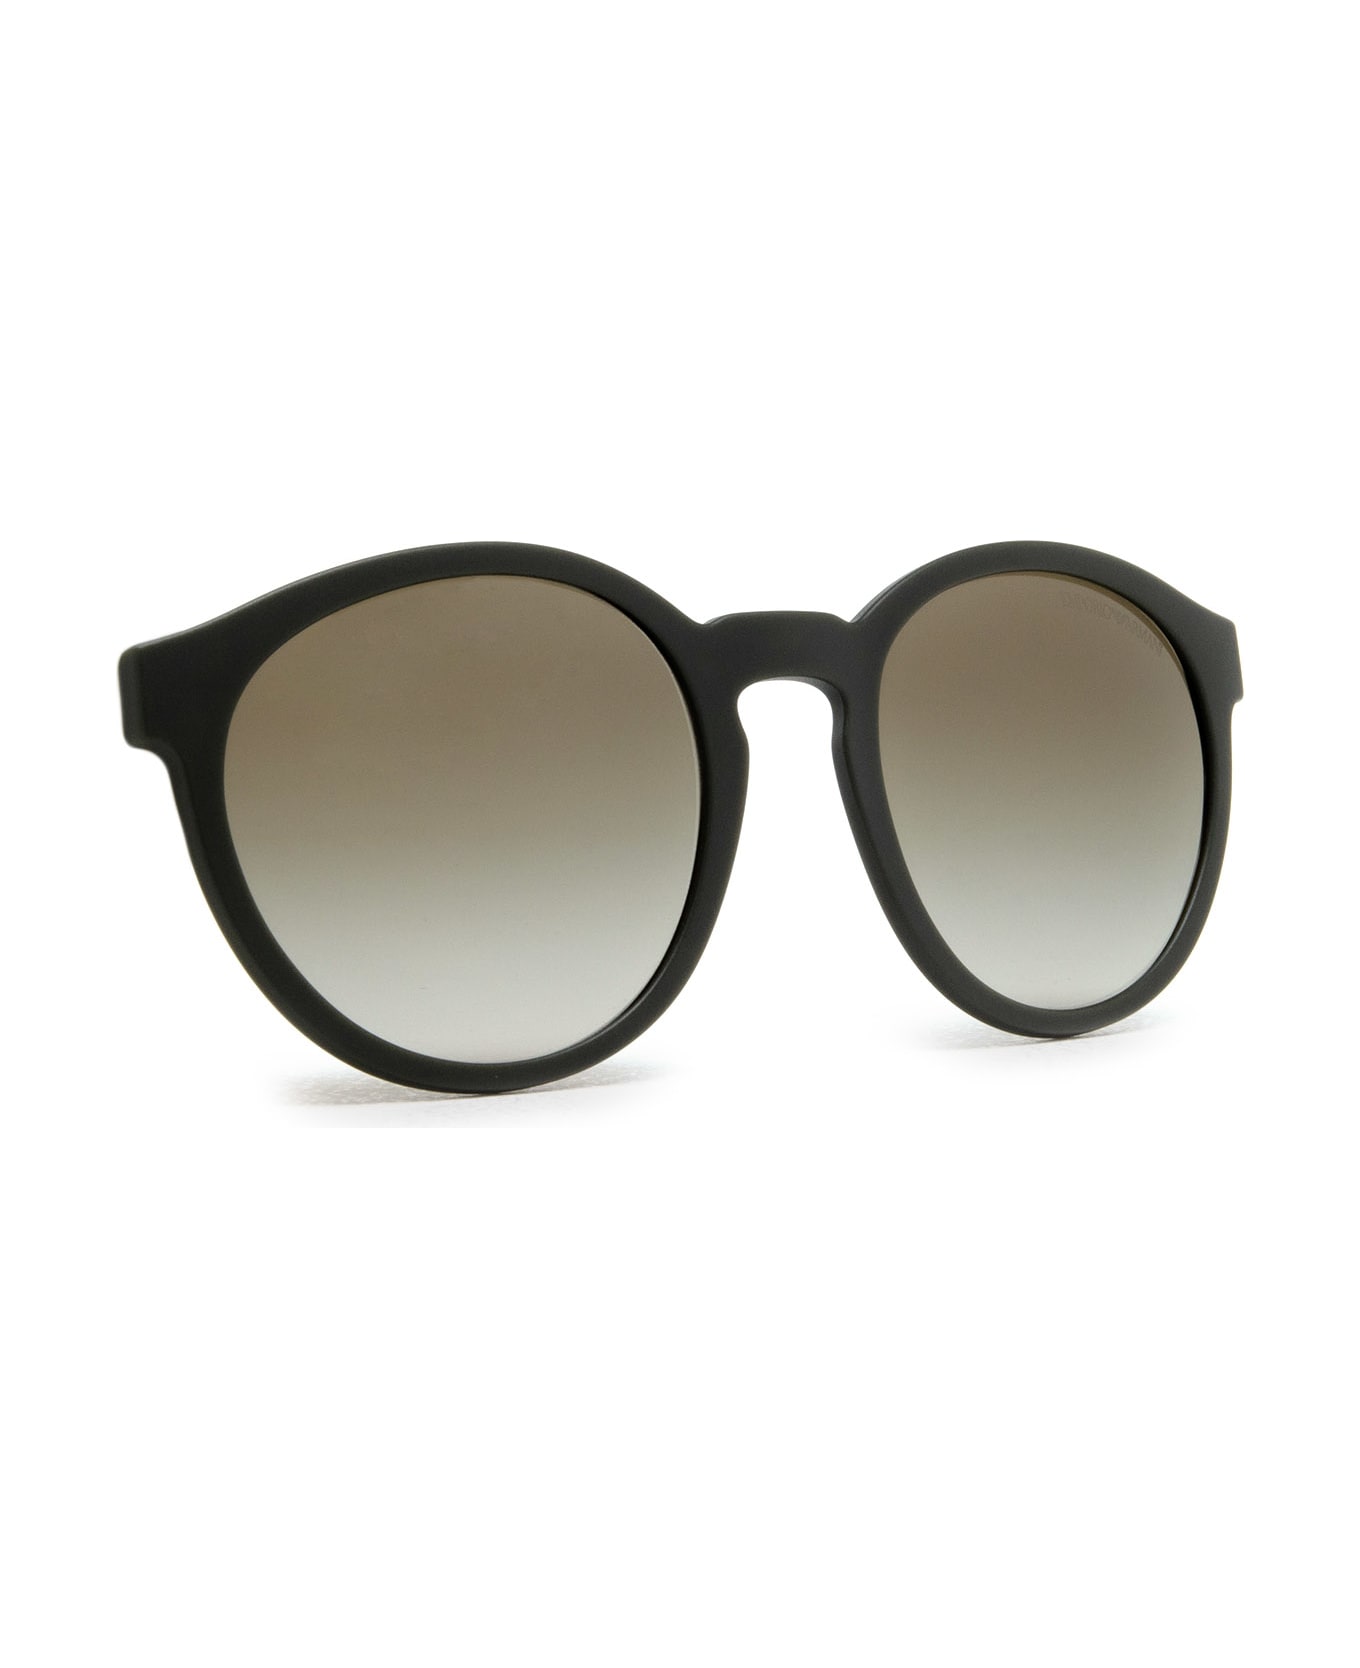 Emporio Armani Ea4152 Matte Black Sunglasses - Matte Black